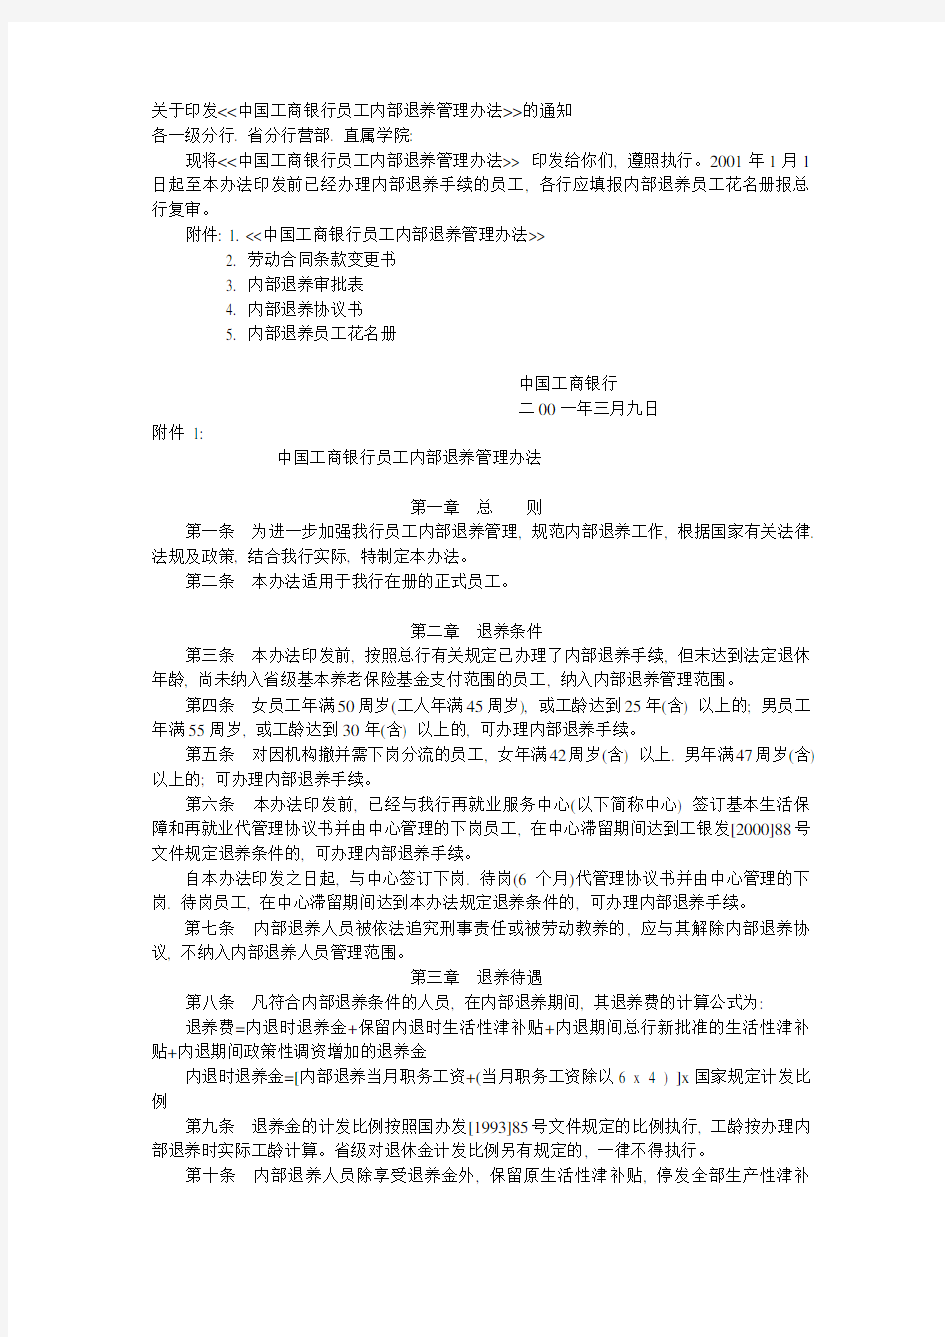 中国工商银行员工内部退养管理办法